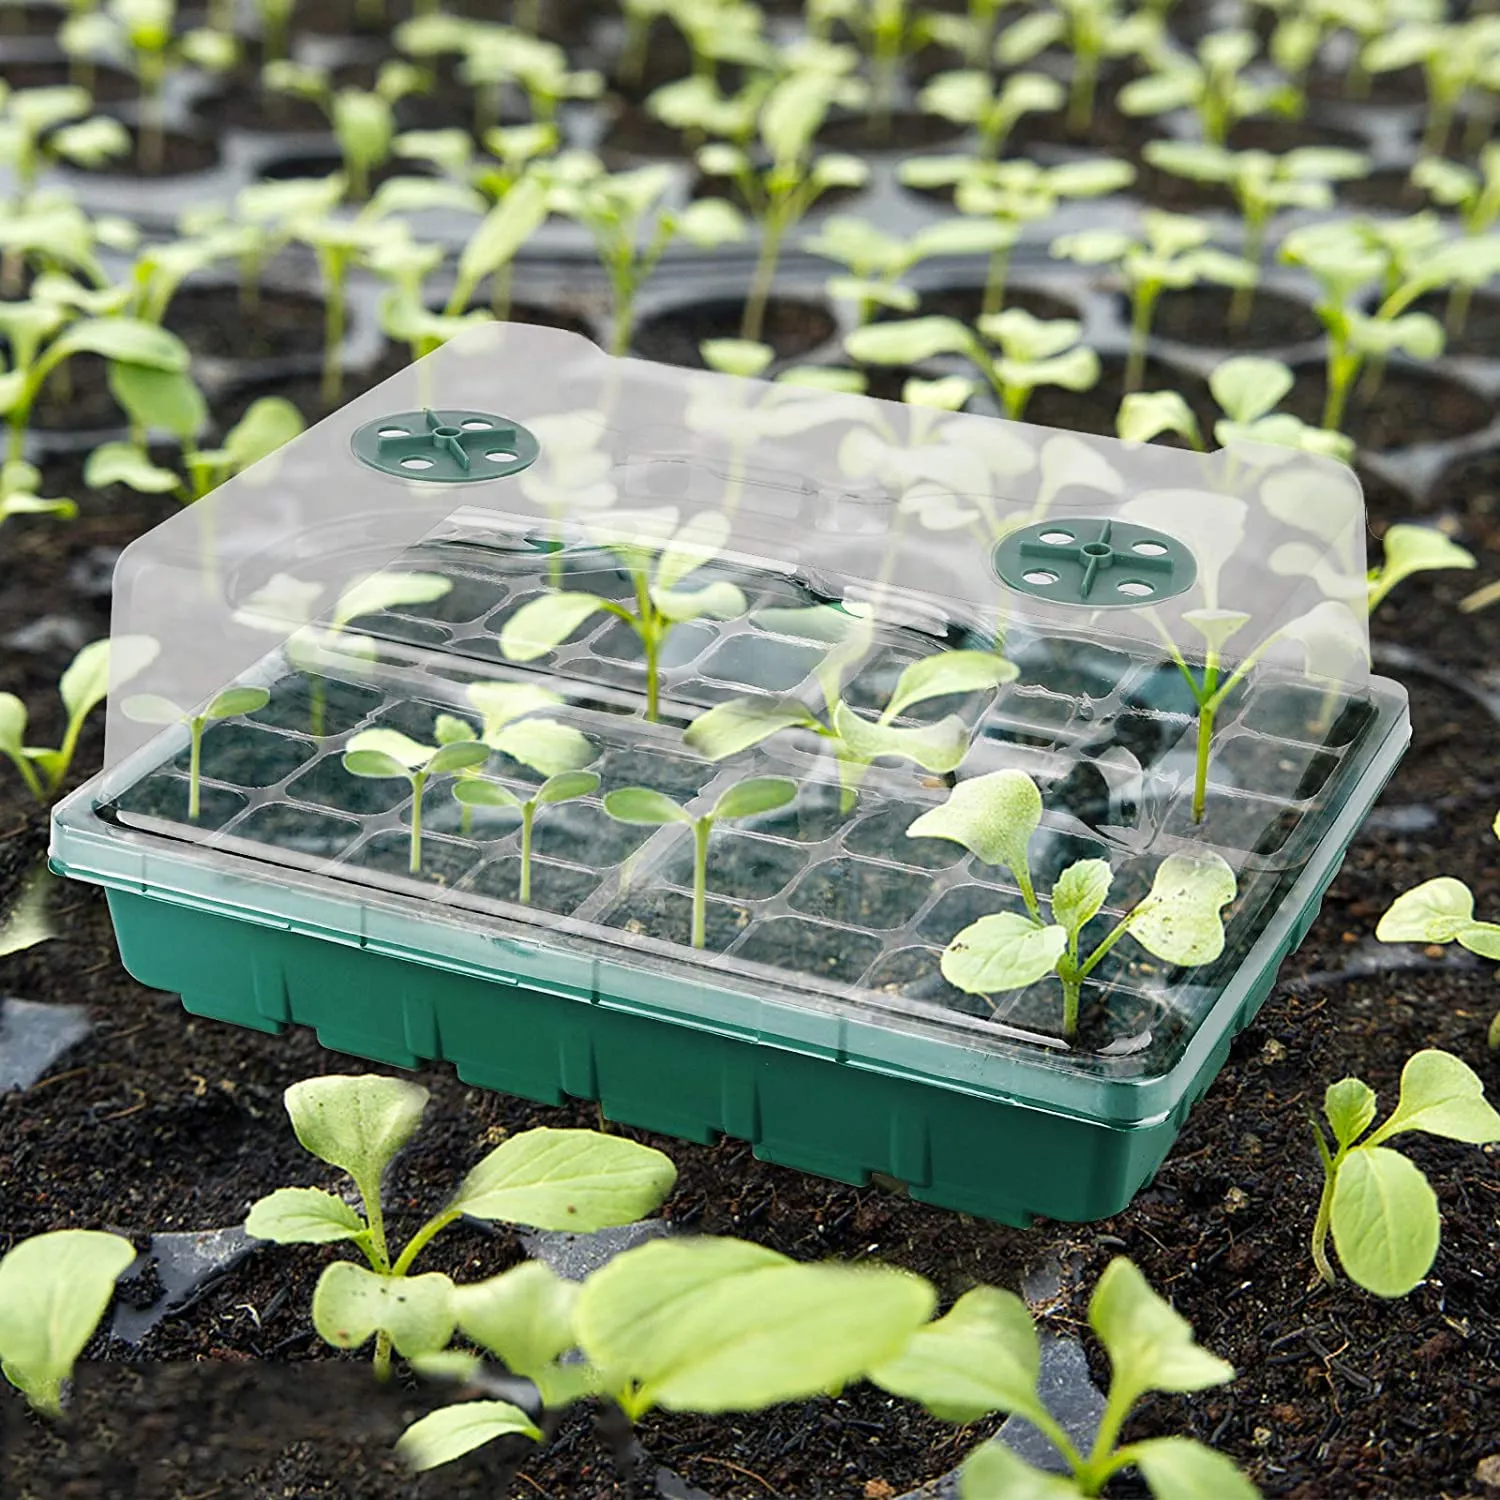 Sementes de bandeja de plataforma de sementes grandes 48 células inserem as sementes de casa quente Jardim de kit de barra de partida com abóbada de humidade e bandejas de base para a propagação de plântulas de germinação